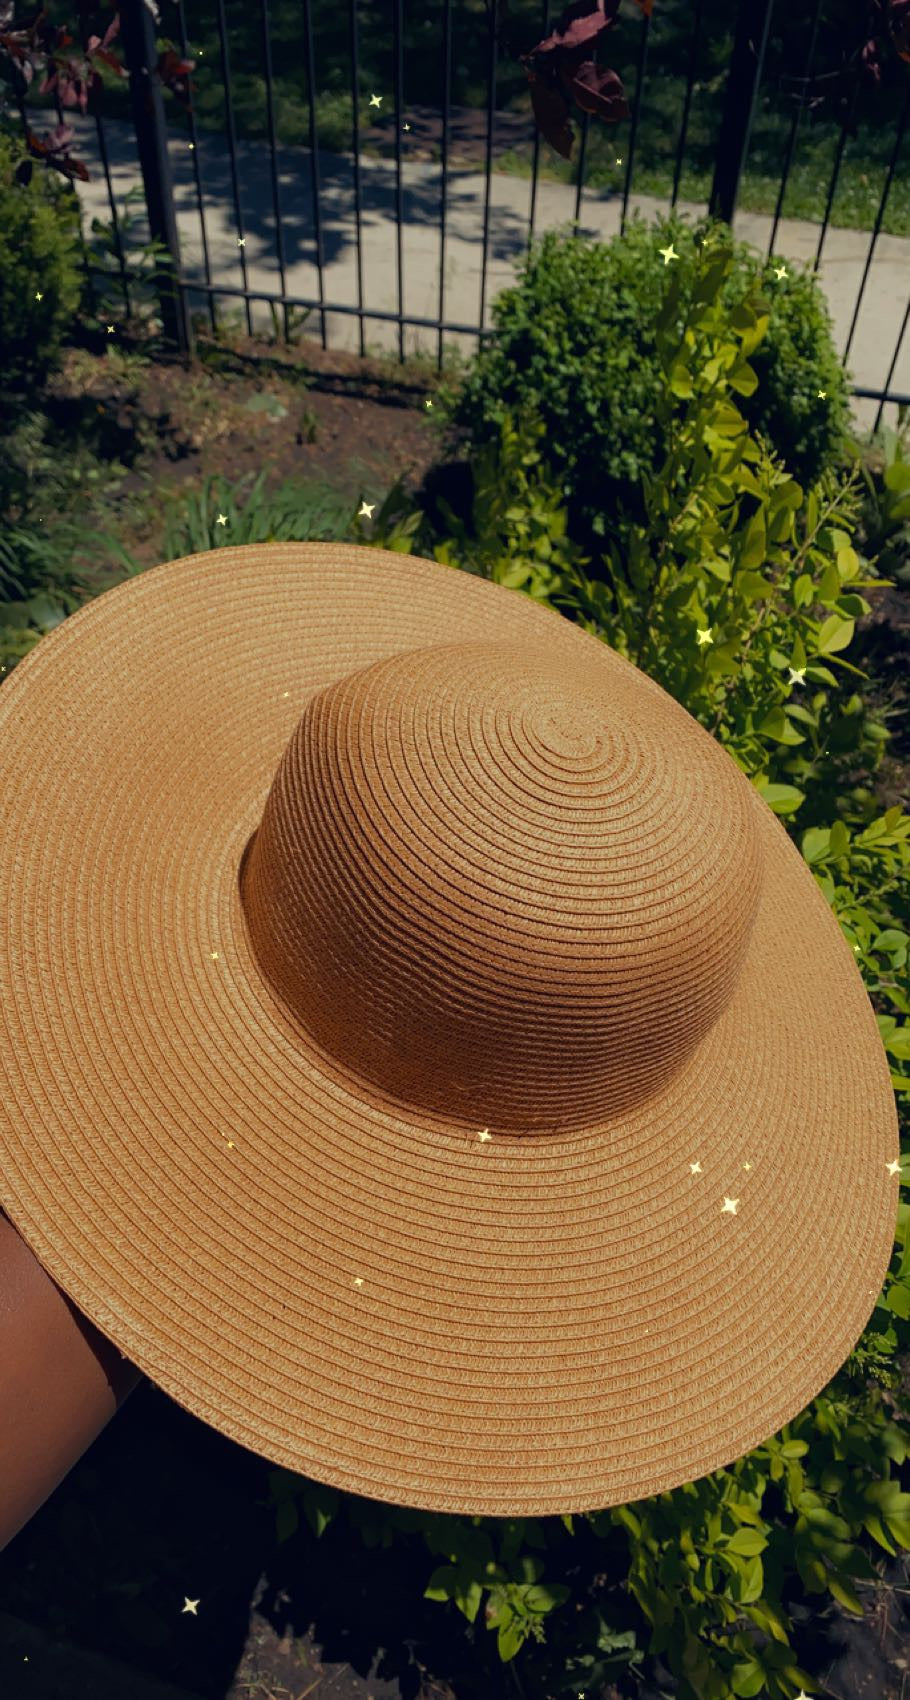 VayKay Sun Hats